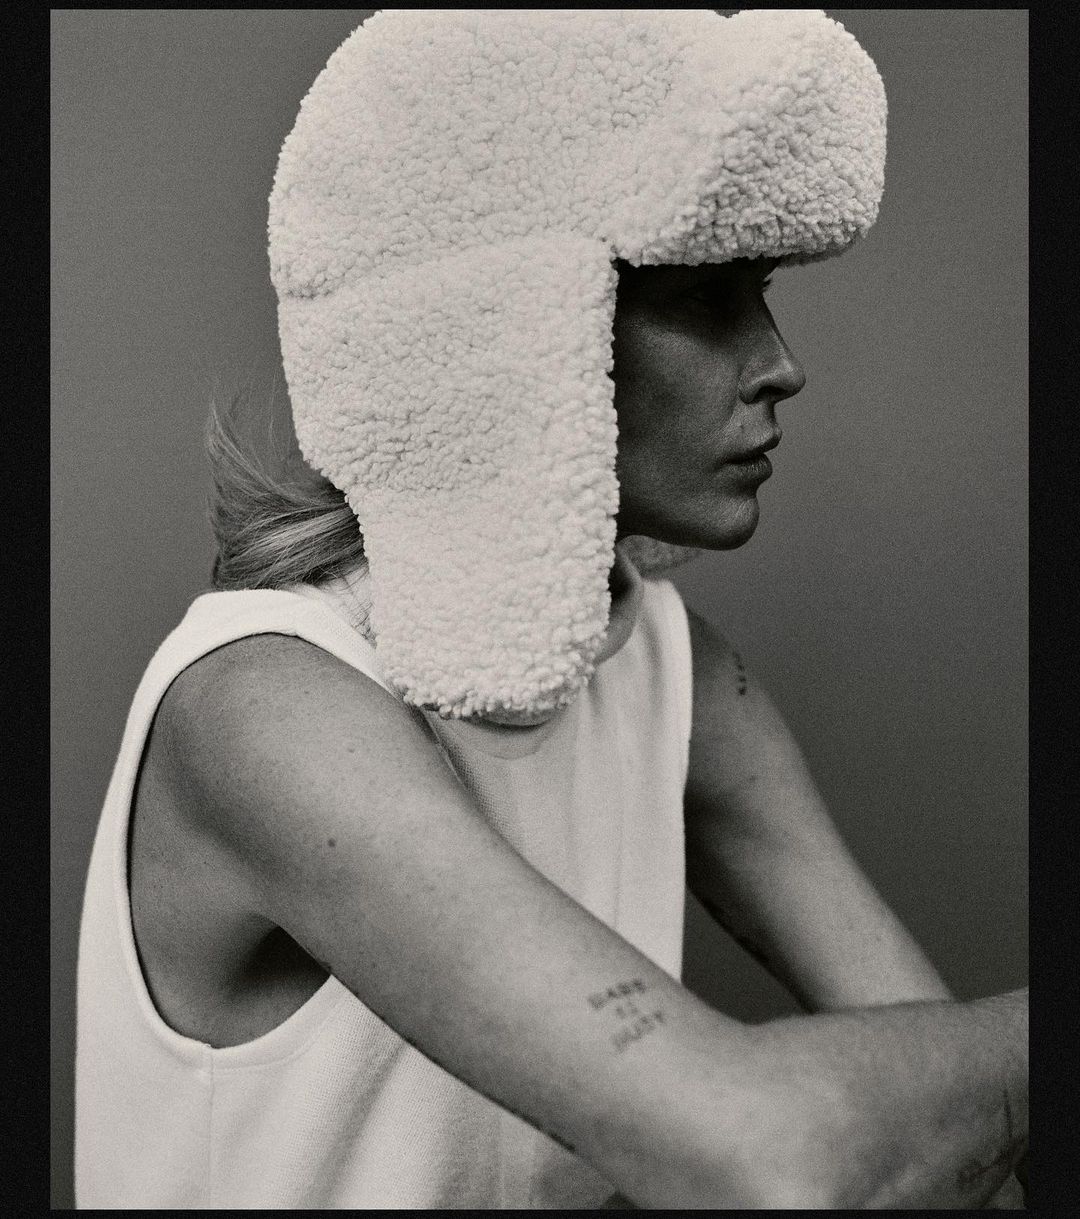 модный головной убор зима 2021 2022 теплое на голову шапка ушанка мех белая